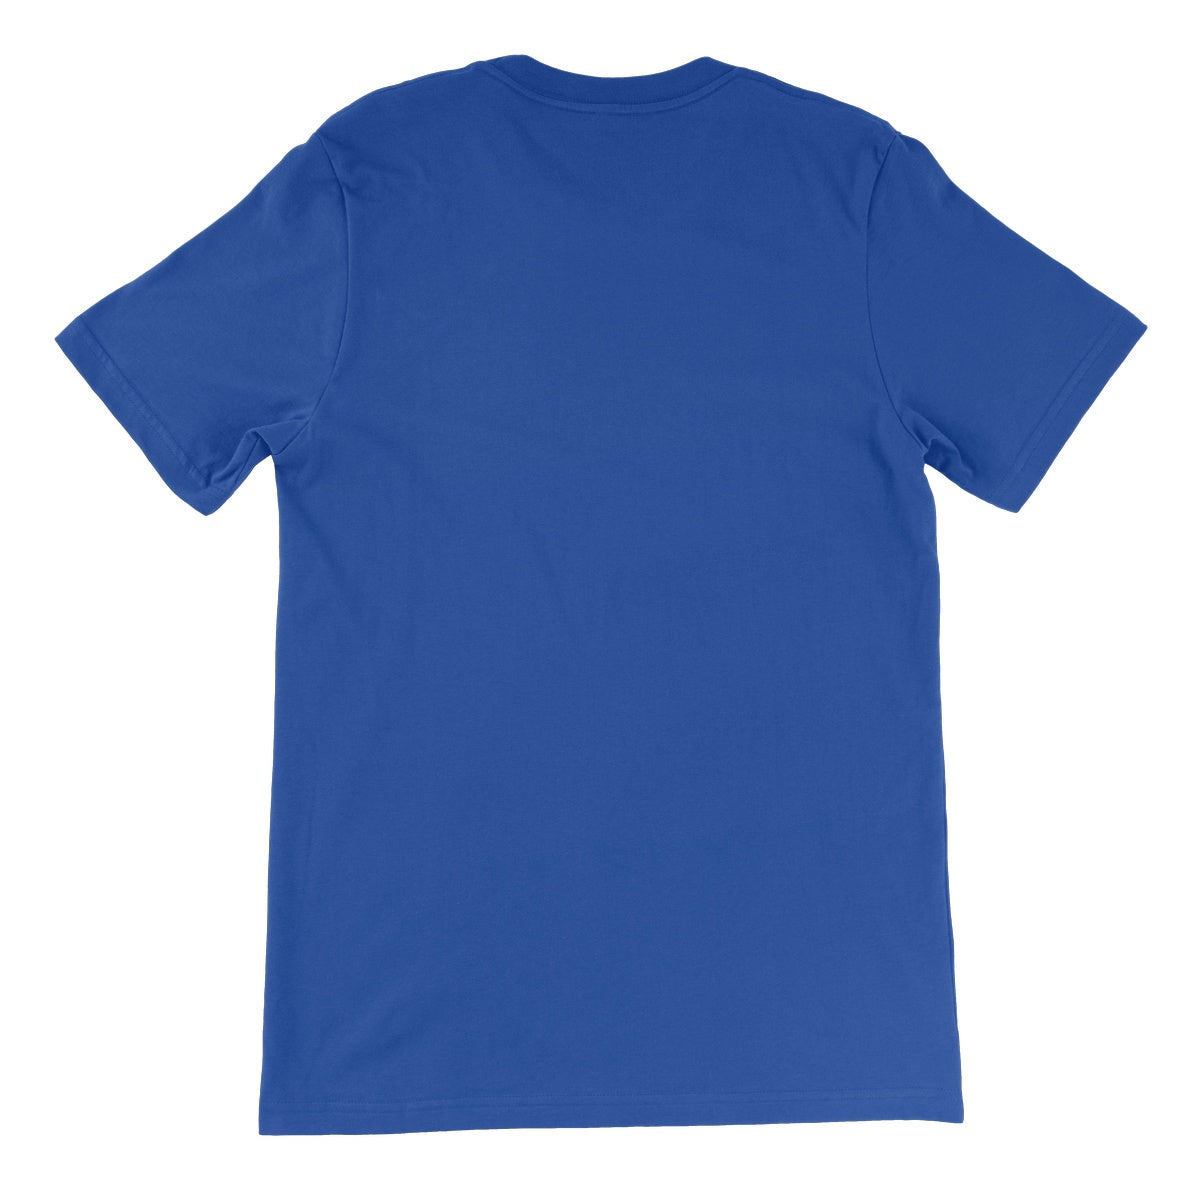 Loxodromes, Autumn Unisex Short Sleeve T-Shirt